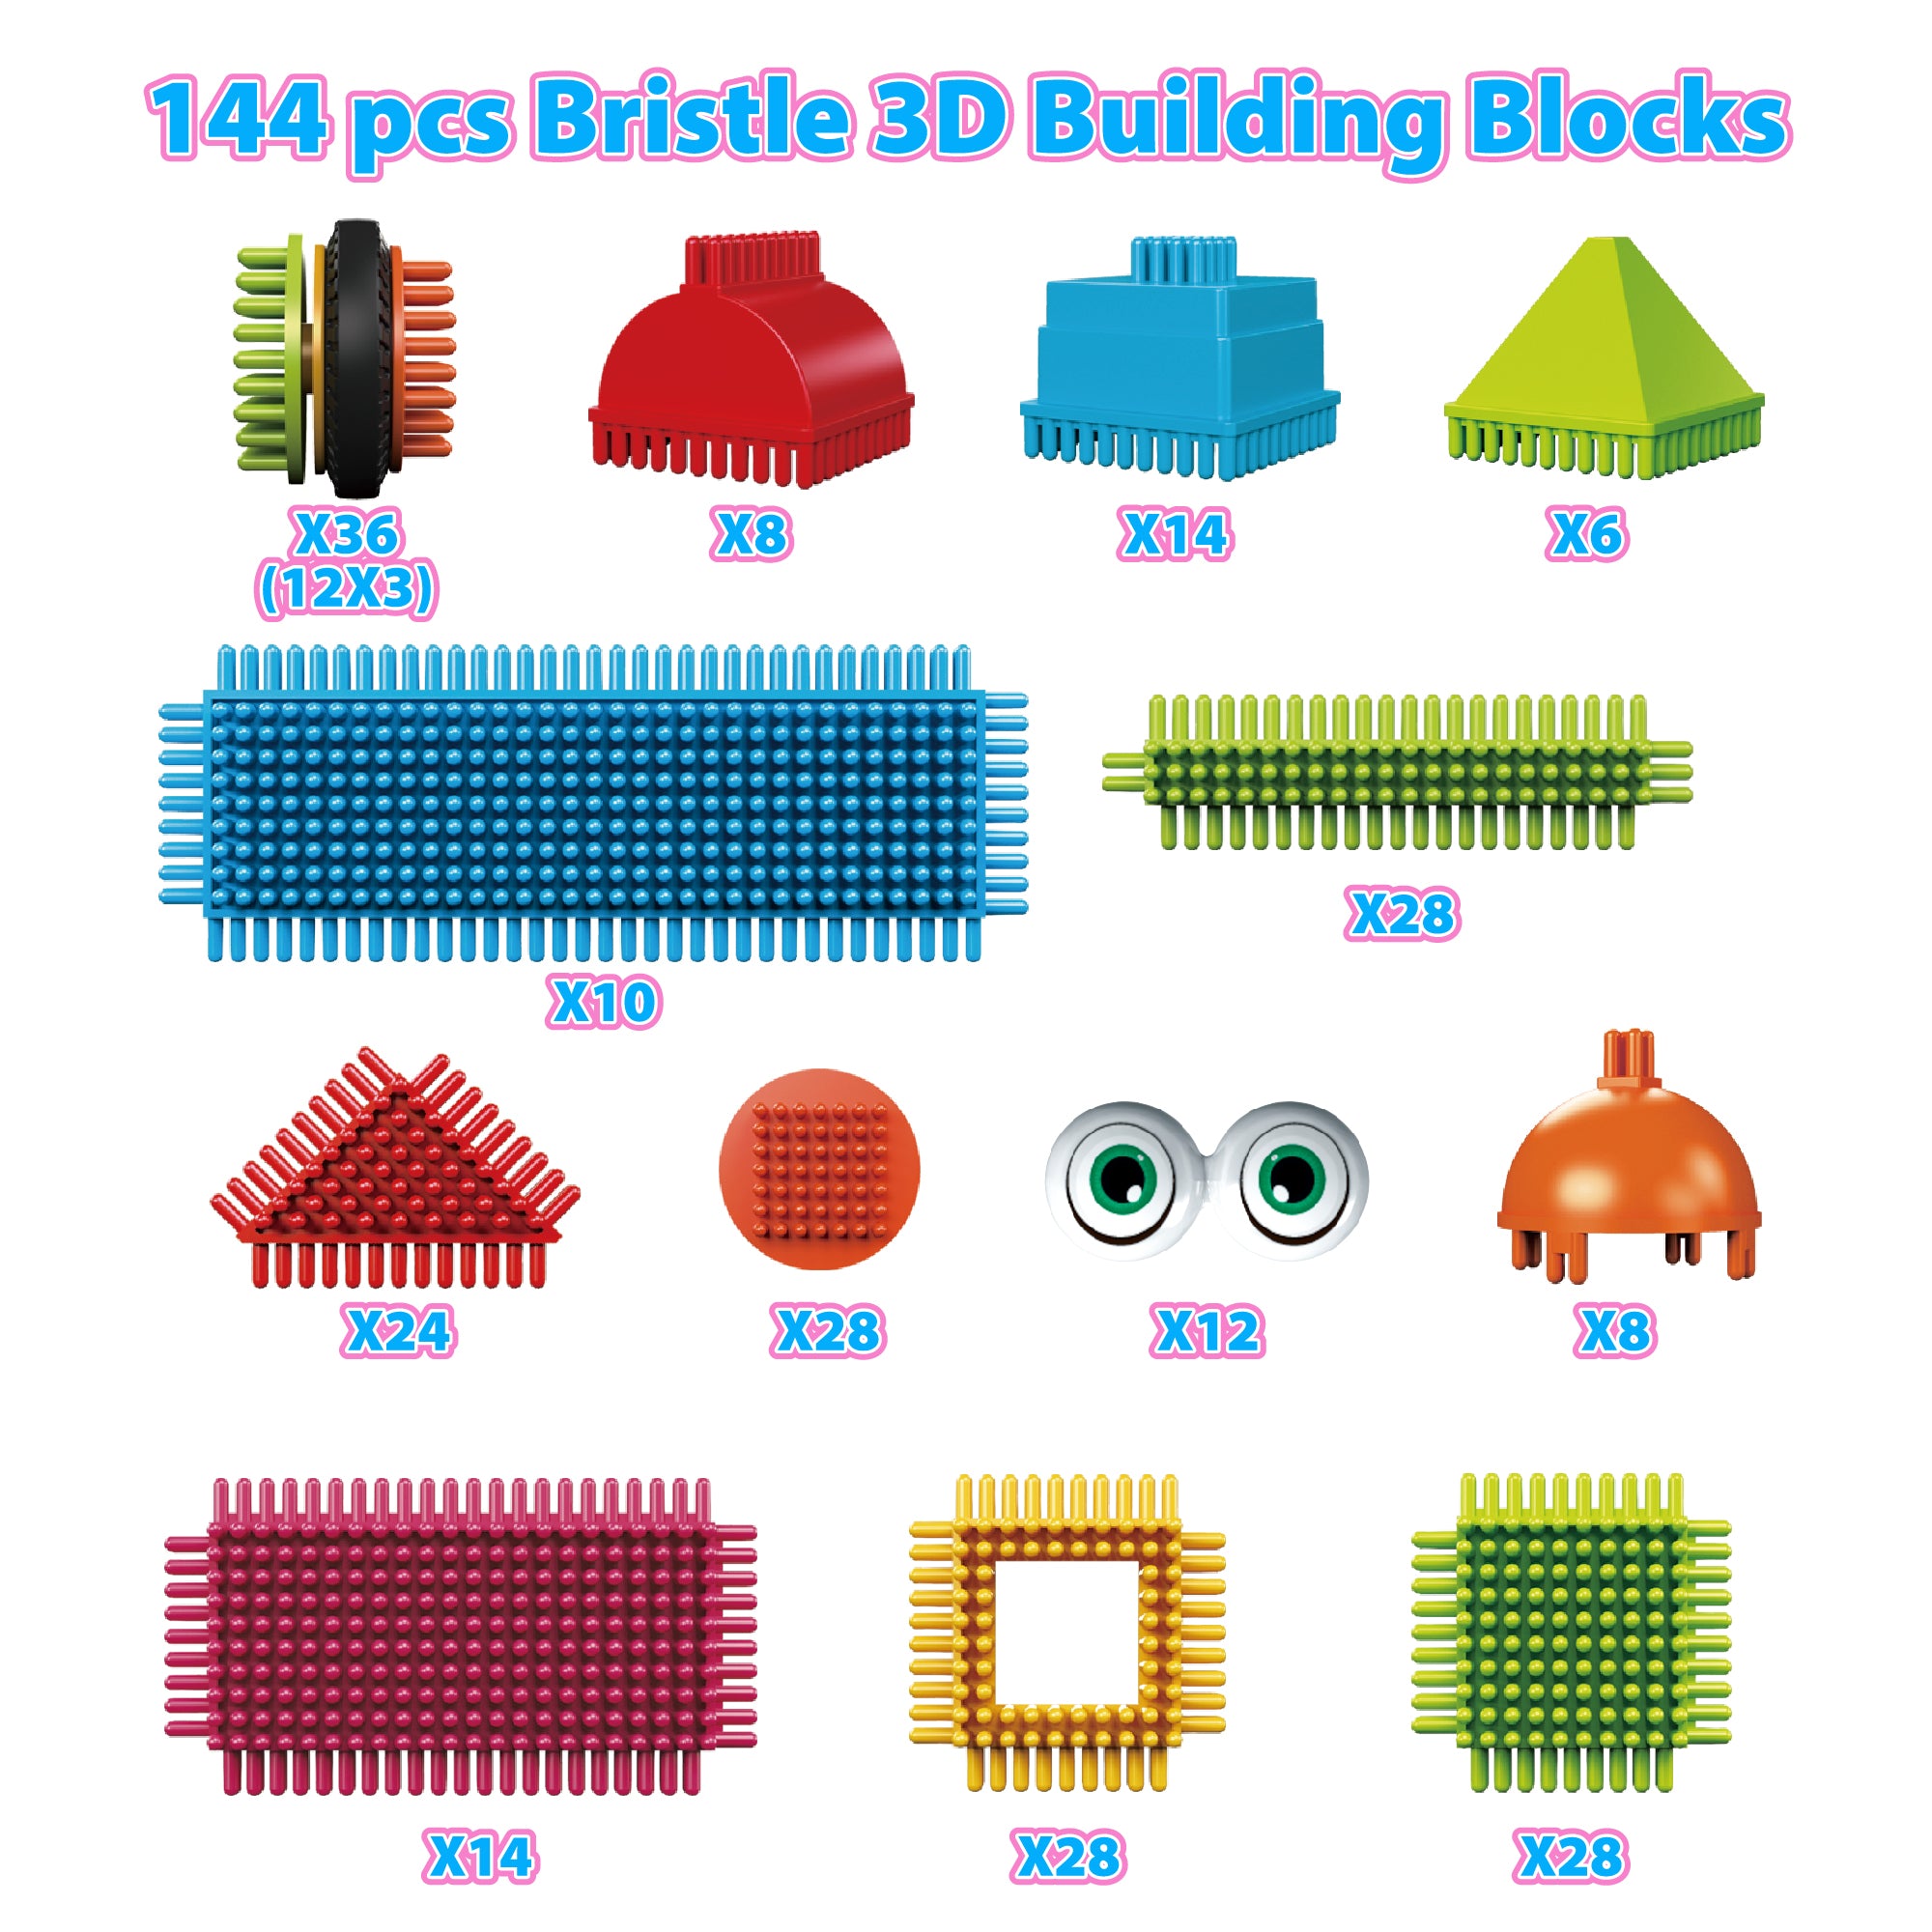 Contixo ST7 244 pcs Bristle Shape 3D Tile STEM Building Block Set